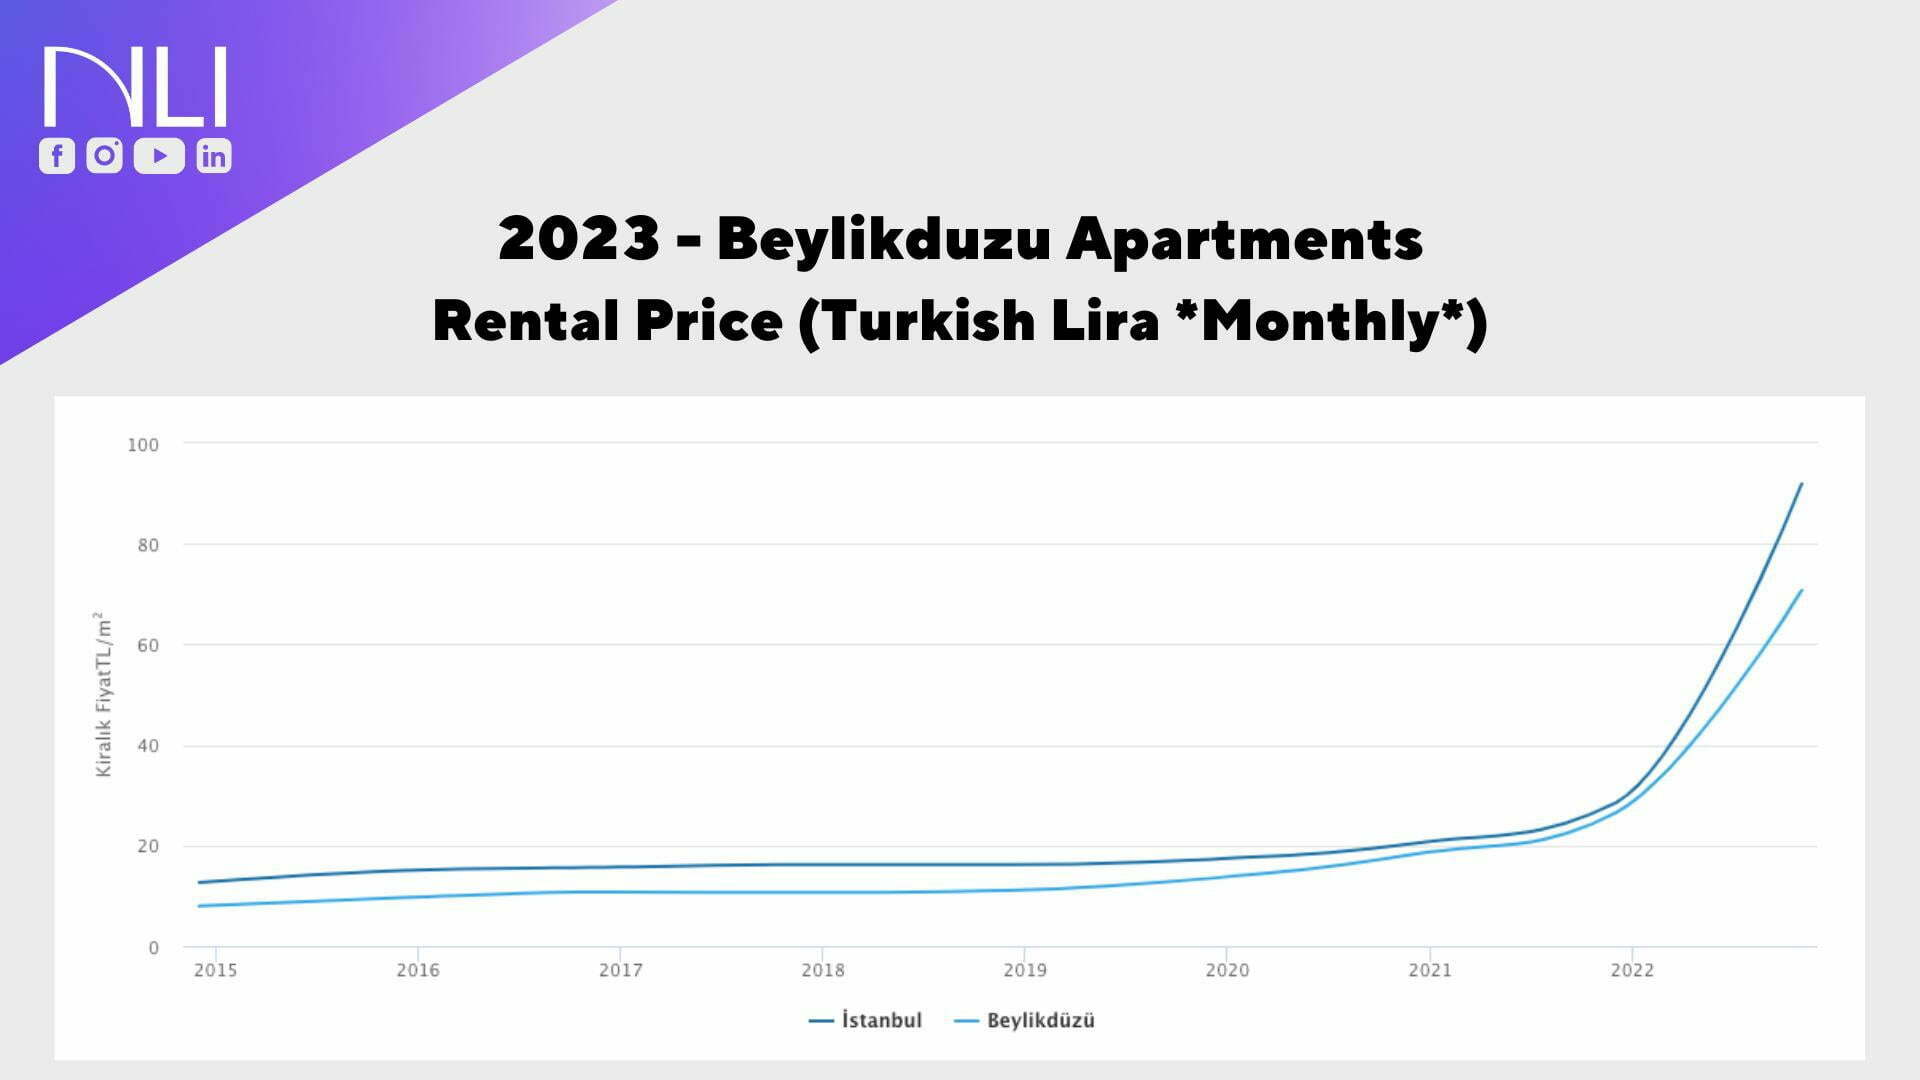 Beylikduzu Apartments Rental Prices